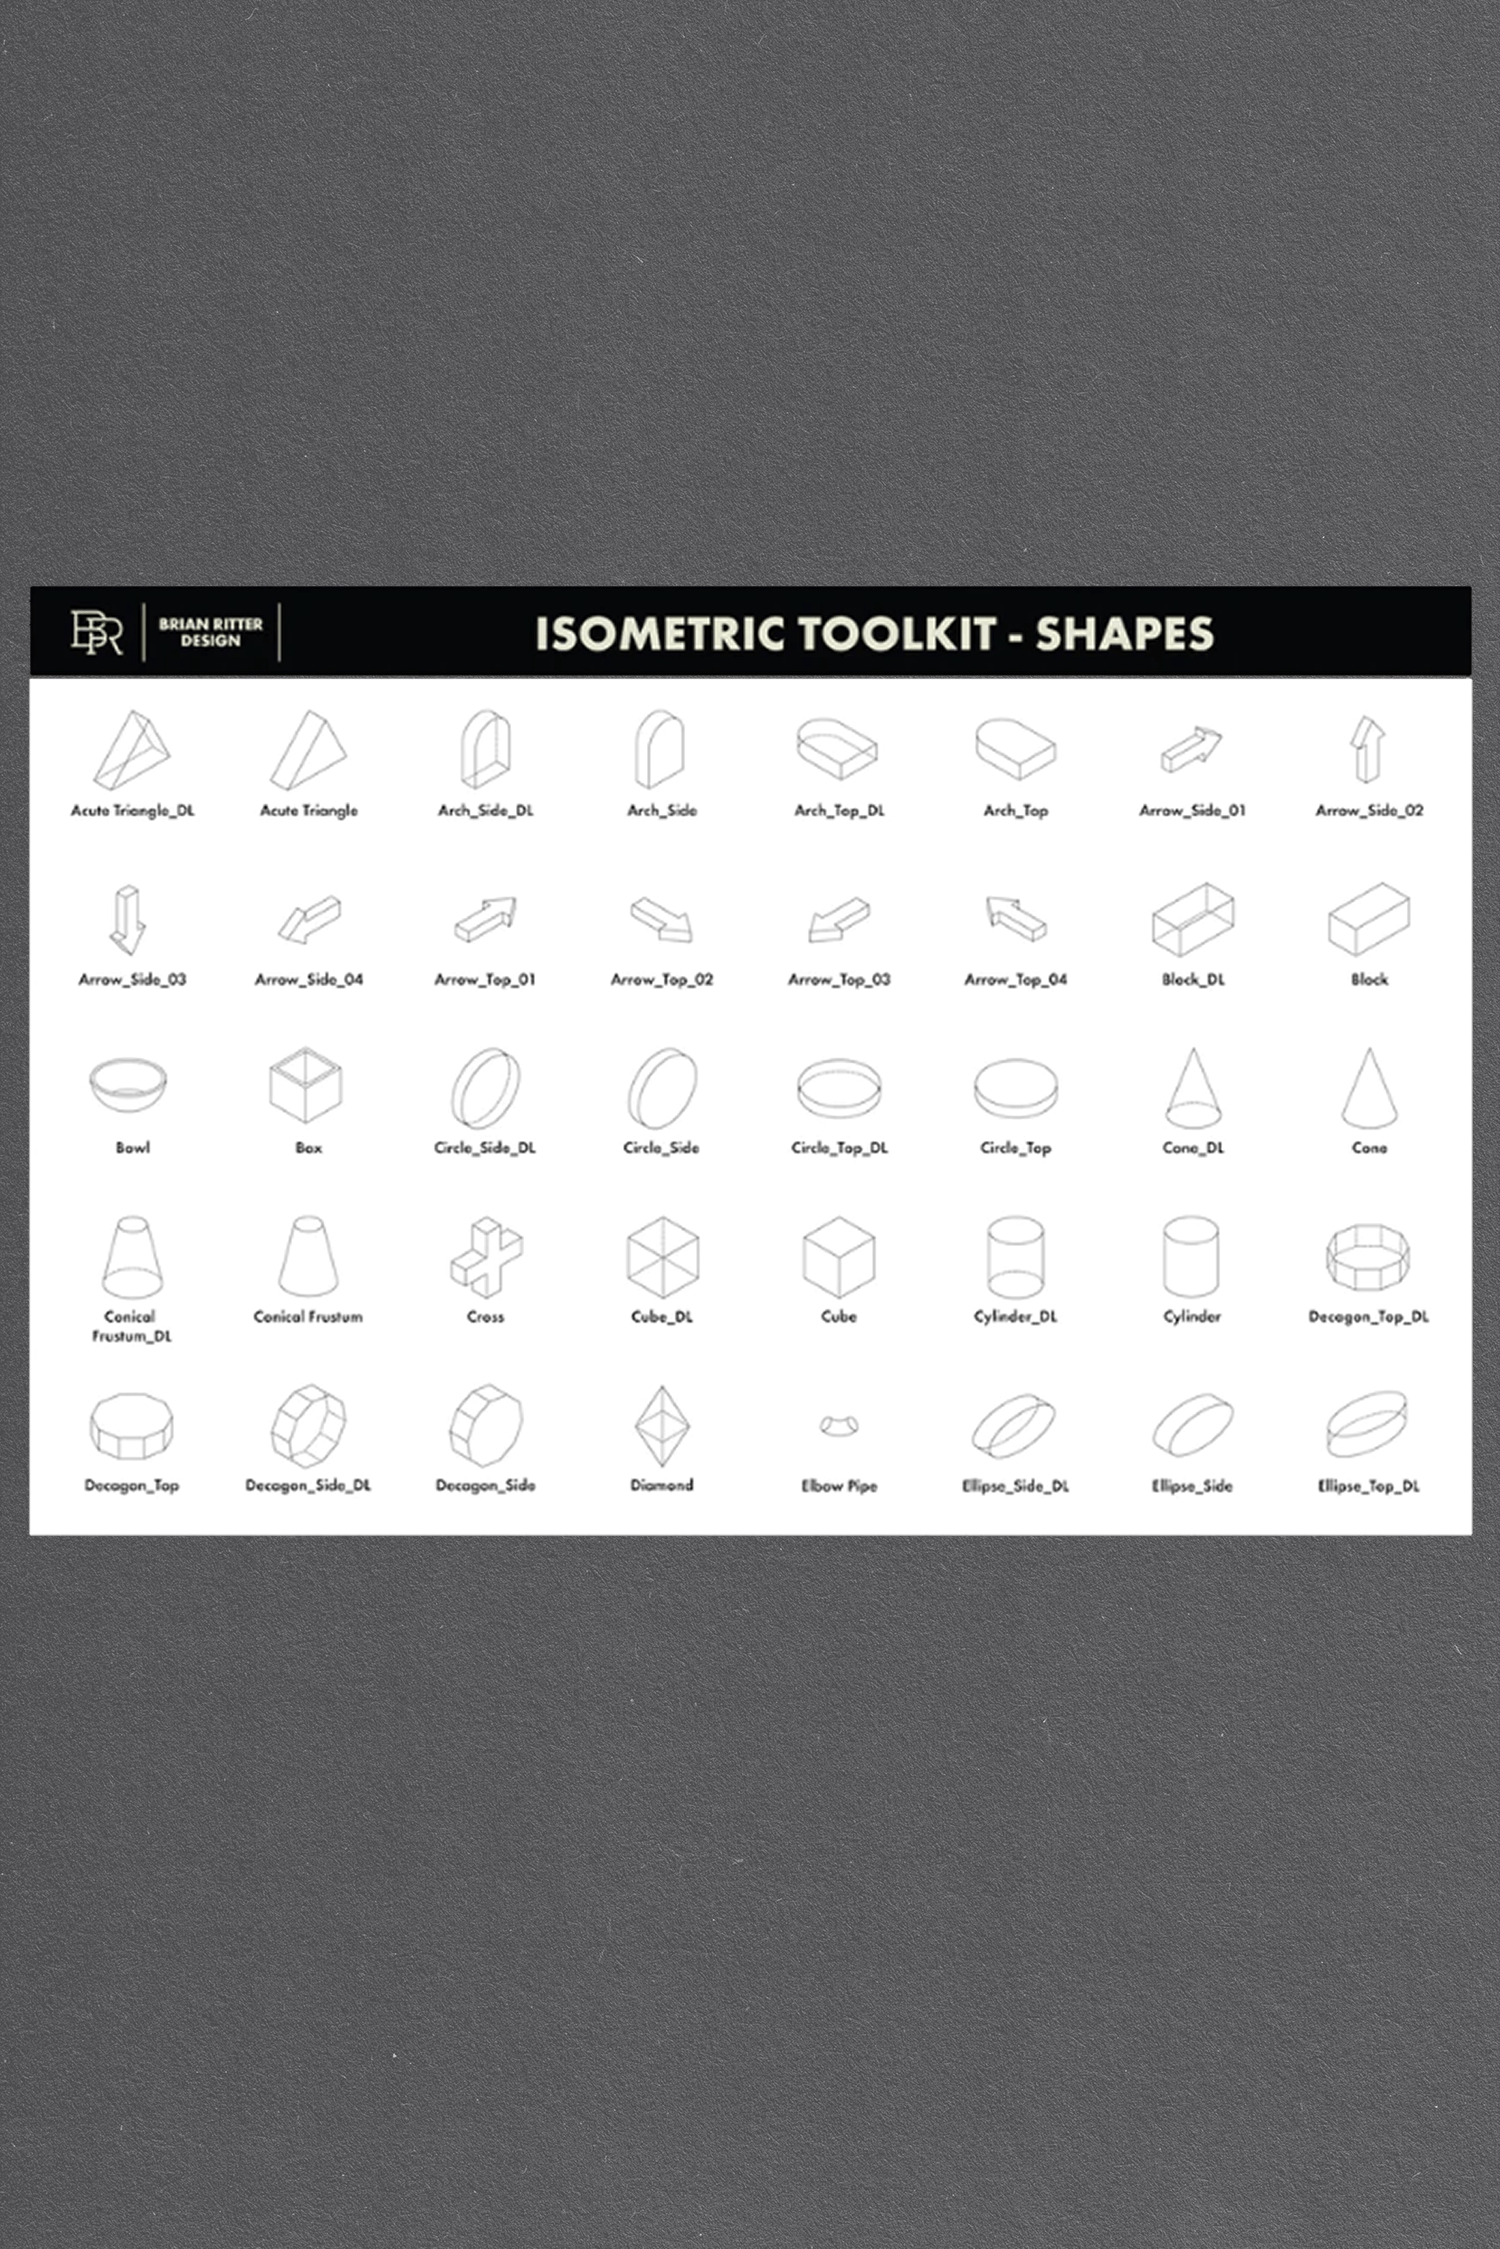 Isometrische Toolkit door Brian Ritter Design